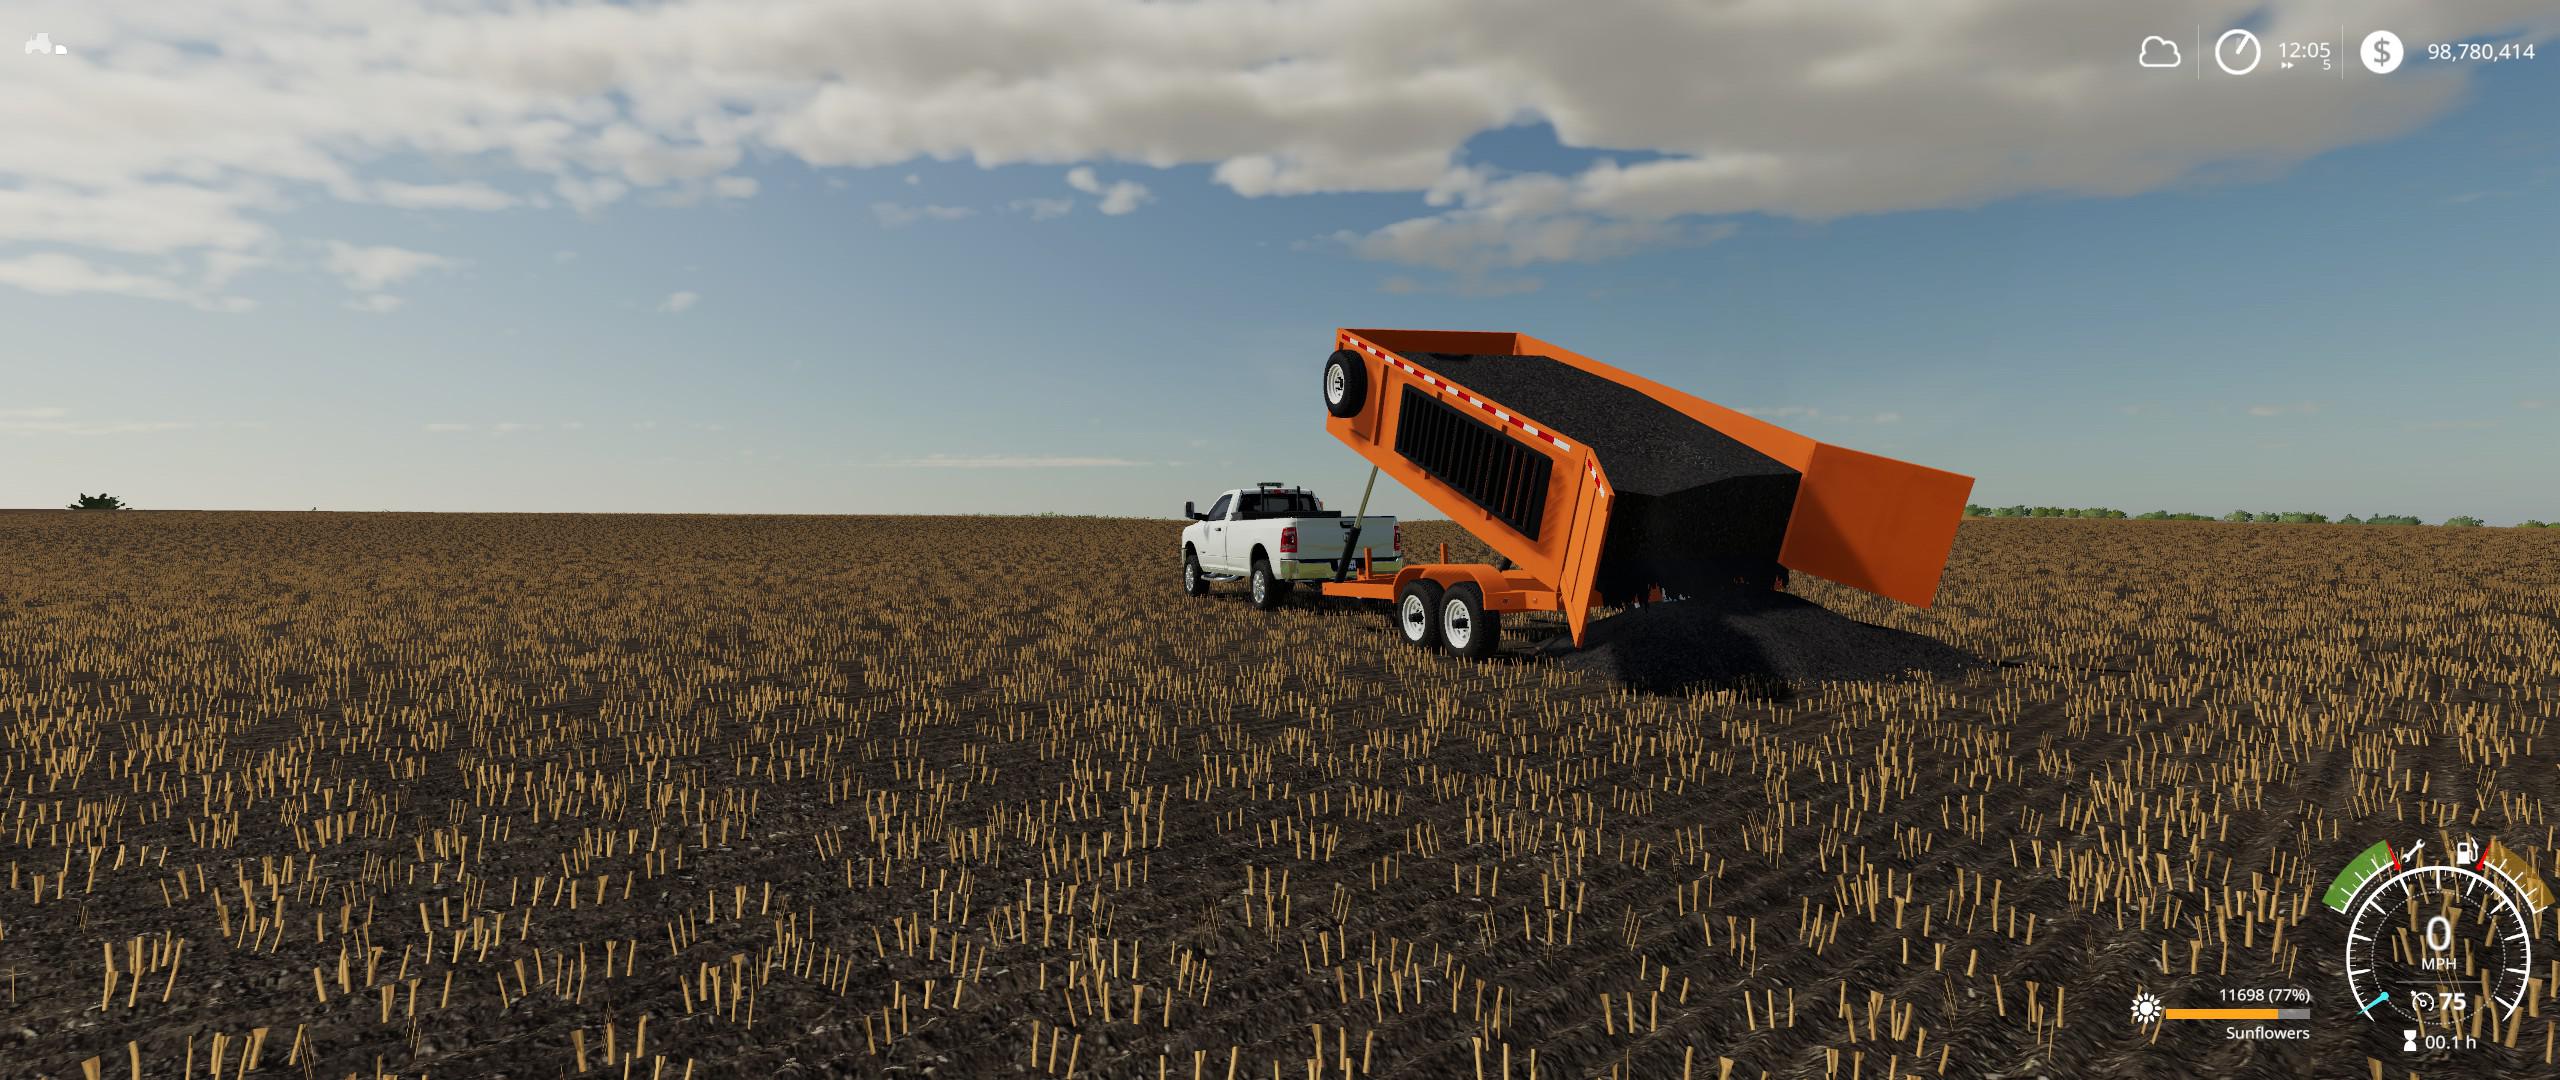 FS19 - Dump Trailer V2.0 | Farming Simulator 19 | Mods.club